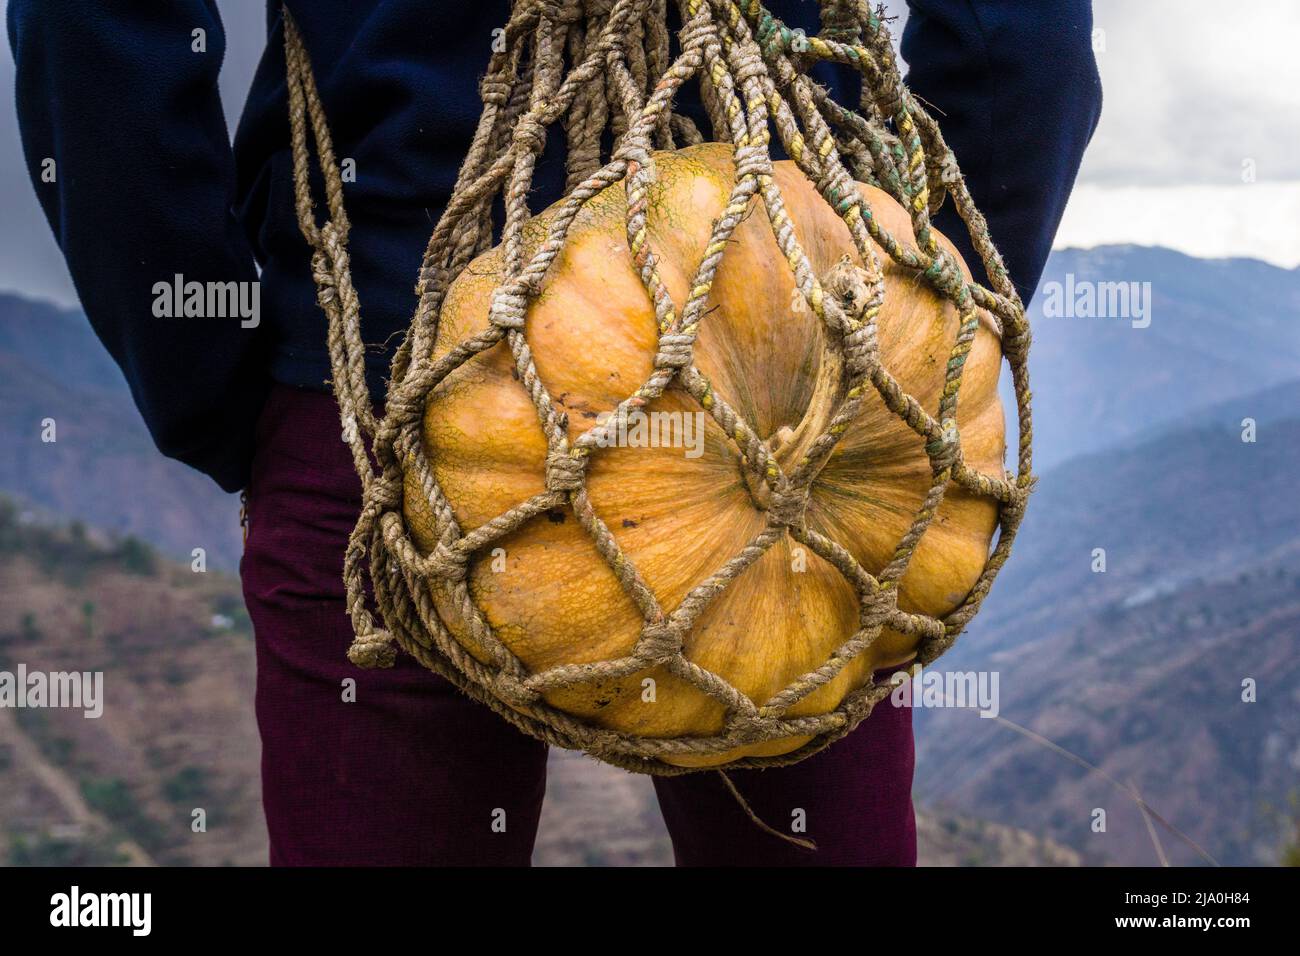 Eine Nahaufnahme eines Mannes, der einen großen Kürbis in einem handgefertigten Seil trägt, das einen Korb trägt. Himalaya-Region von Uttarakhand Indien. Stockfoto